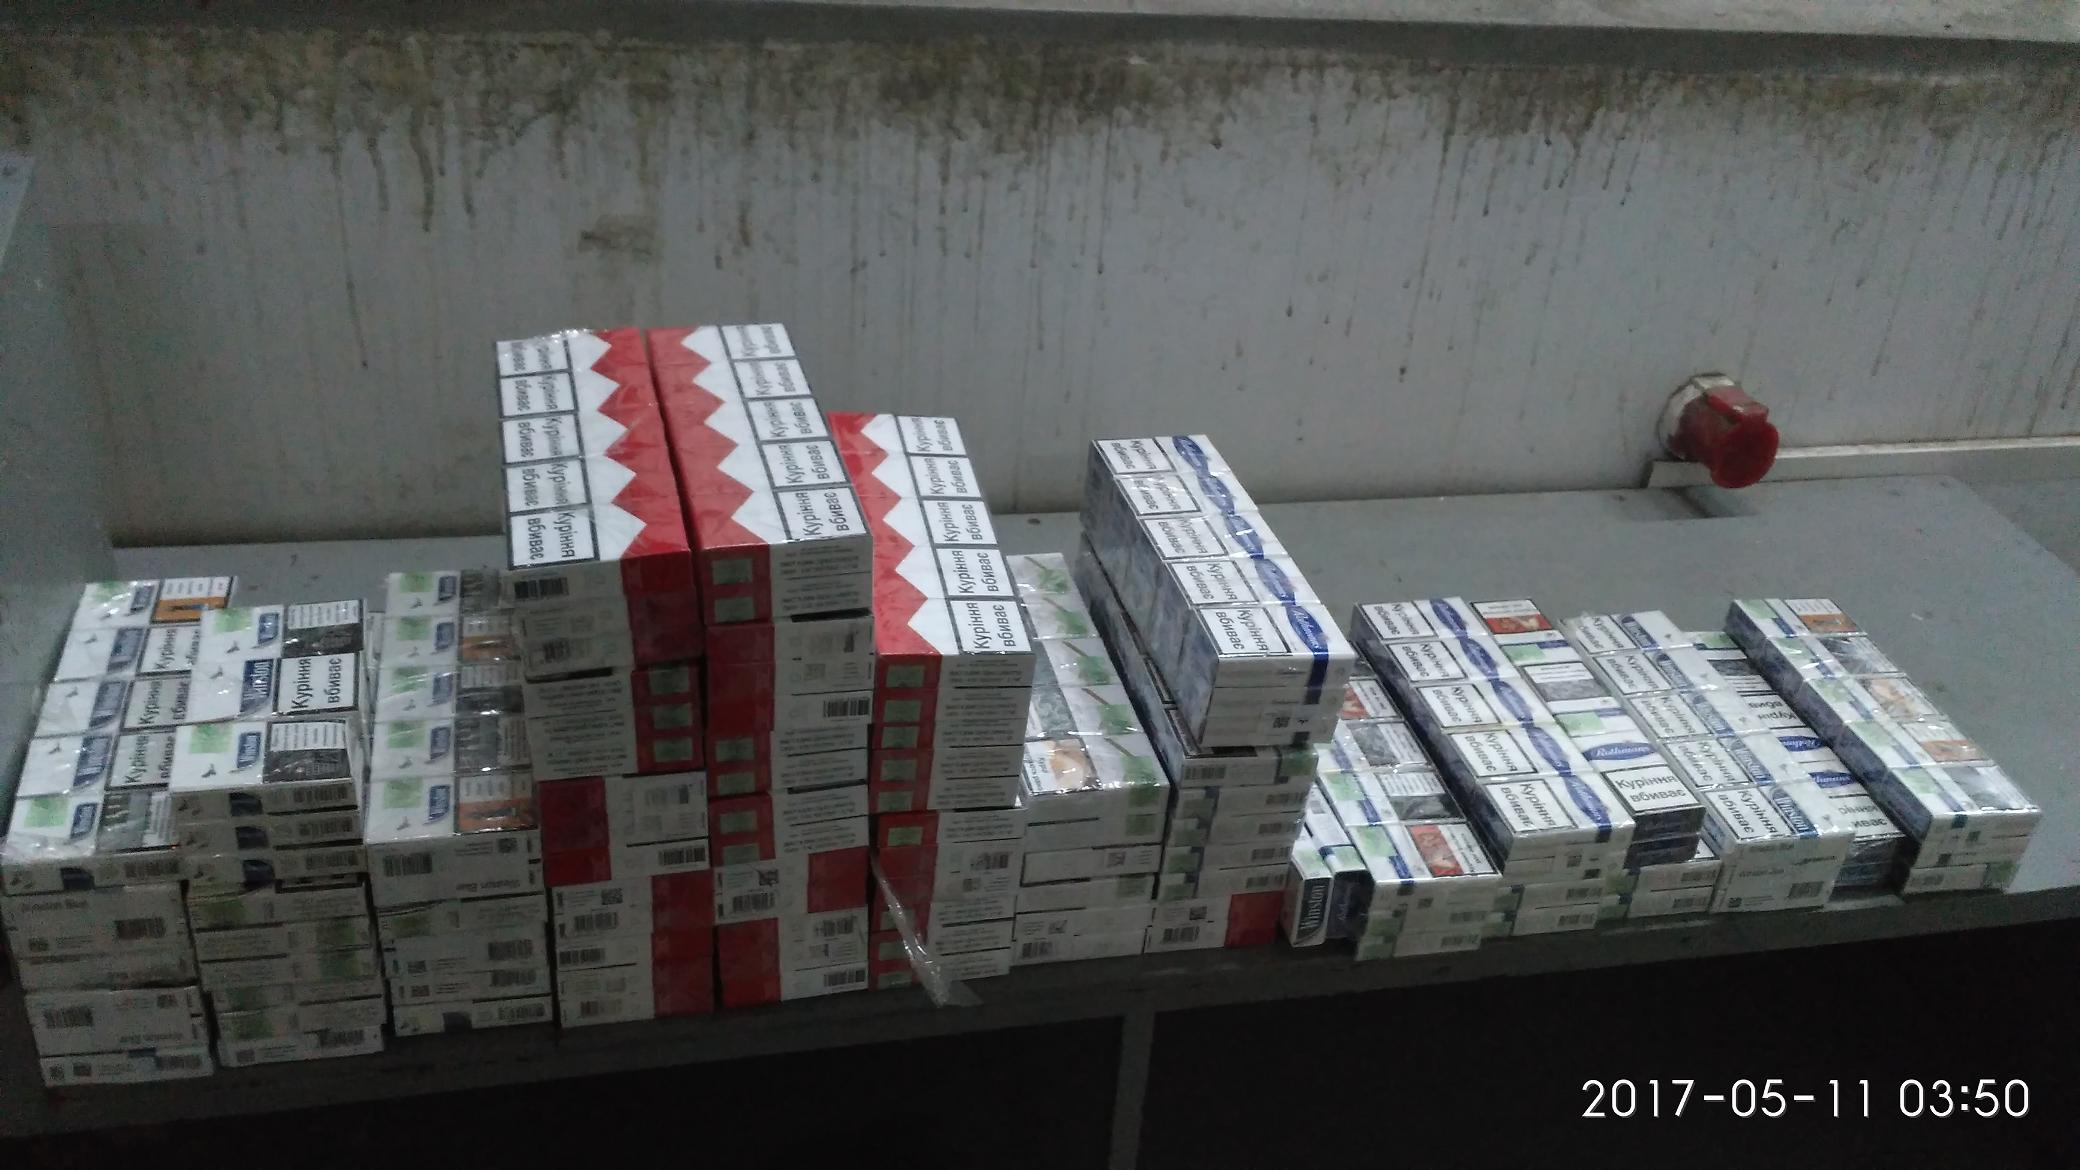 Сьогодні, 11 травня 2017 року, в зоні митного контролю митного посту «Тиса» Закарпатської митниці ДФС припинено спробу незаконного вивезення з України тютюнових виробів.